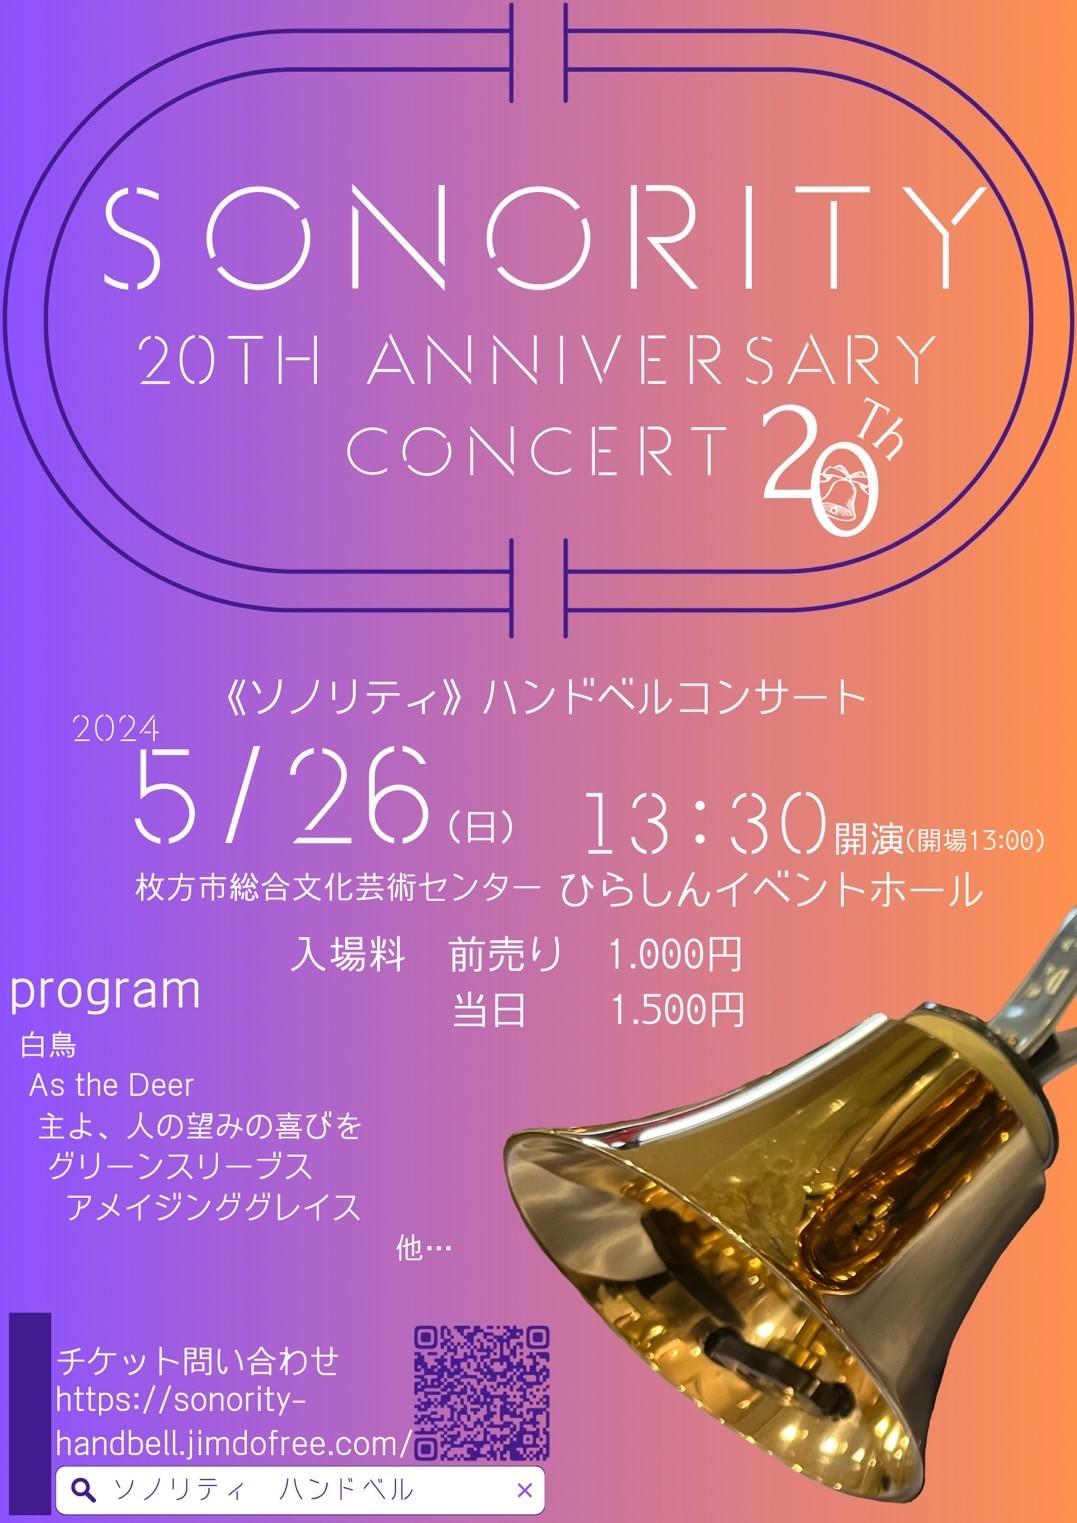 Sonority ハンドベル 20th アニバーサリーコンサート